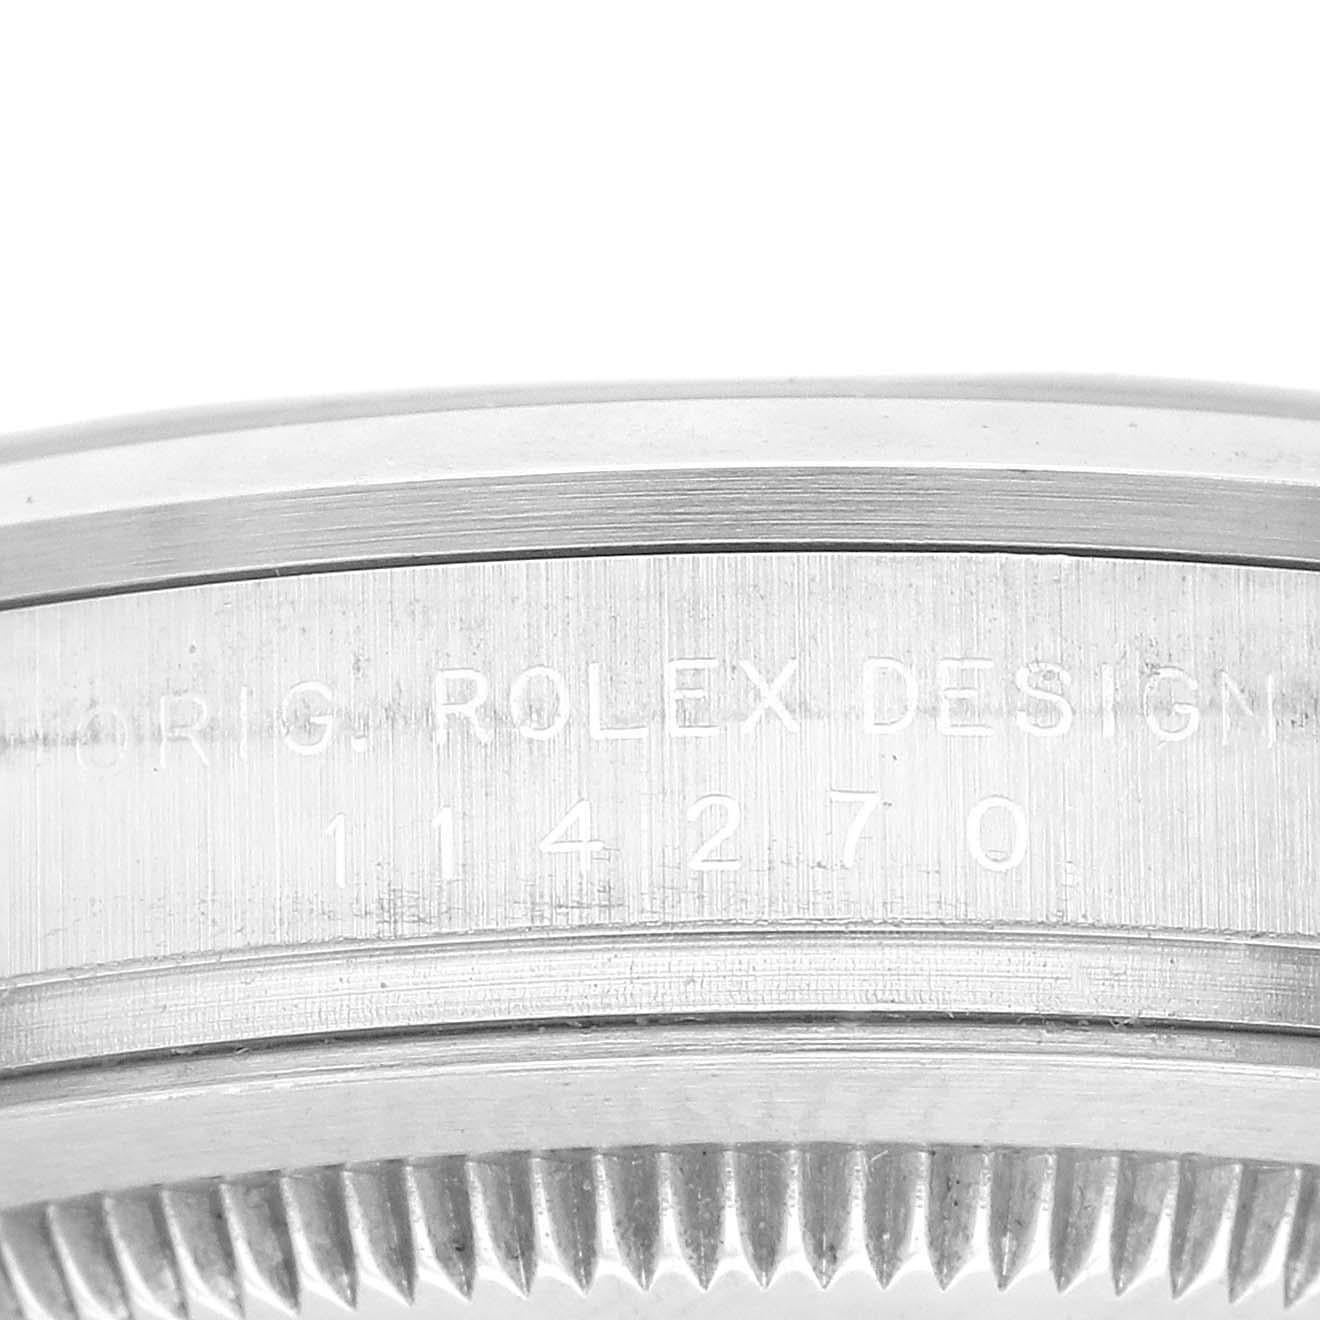 Rolex Explorer I Schwarzes Zifferblatt Stahl Herrenuhr 114270. Offiziell zertifiziertes Chronometerwerk mit automatischem Aufzug. Gehäuse aus Edelstahl mit einem Durchmesser von 36.0 mm. Rolex Logo auf der Krone. Glatte Lünette aus Edelstahl.